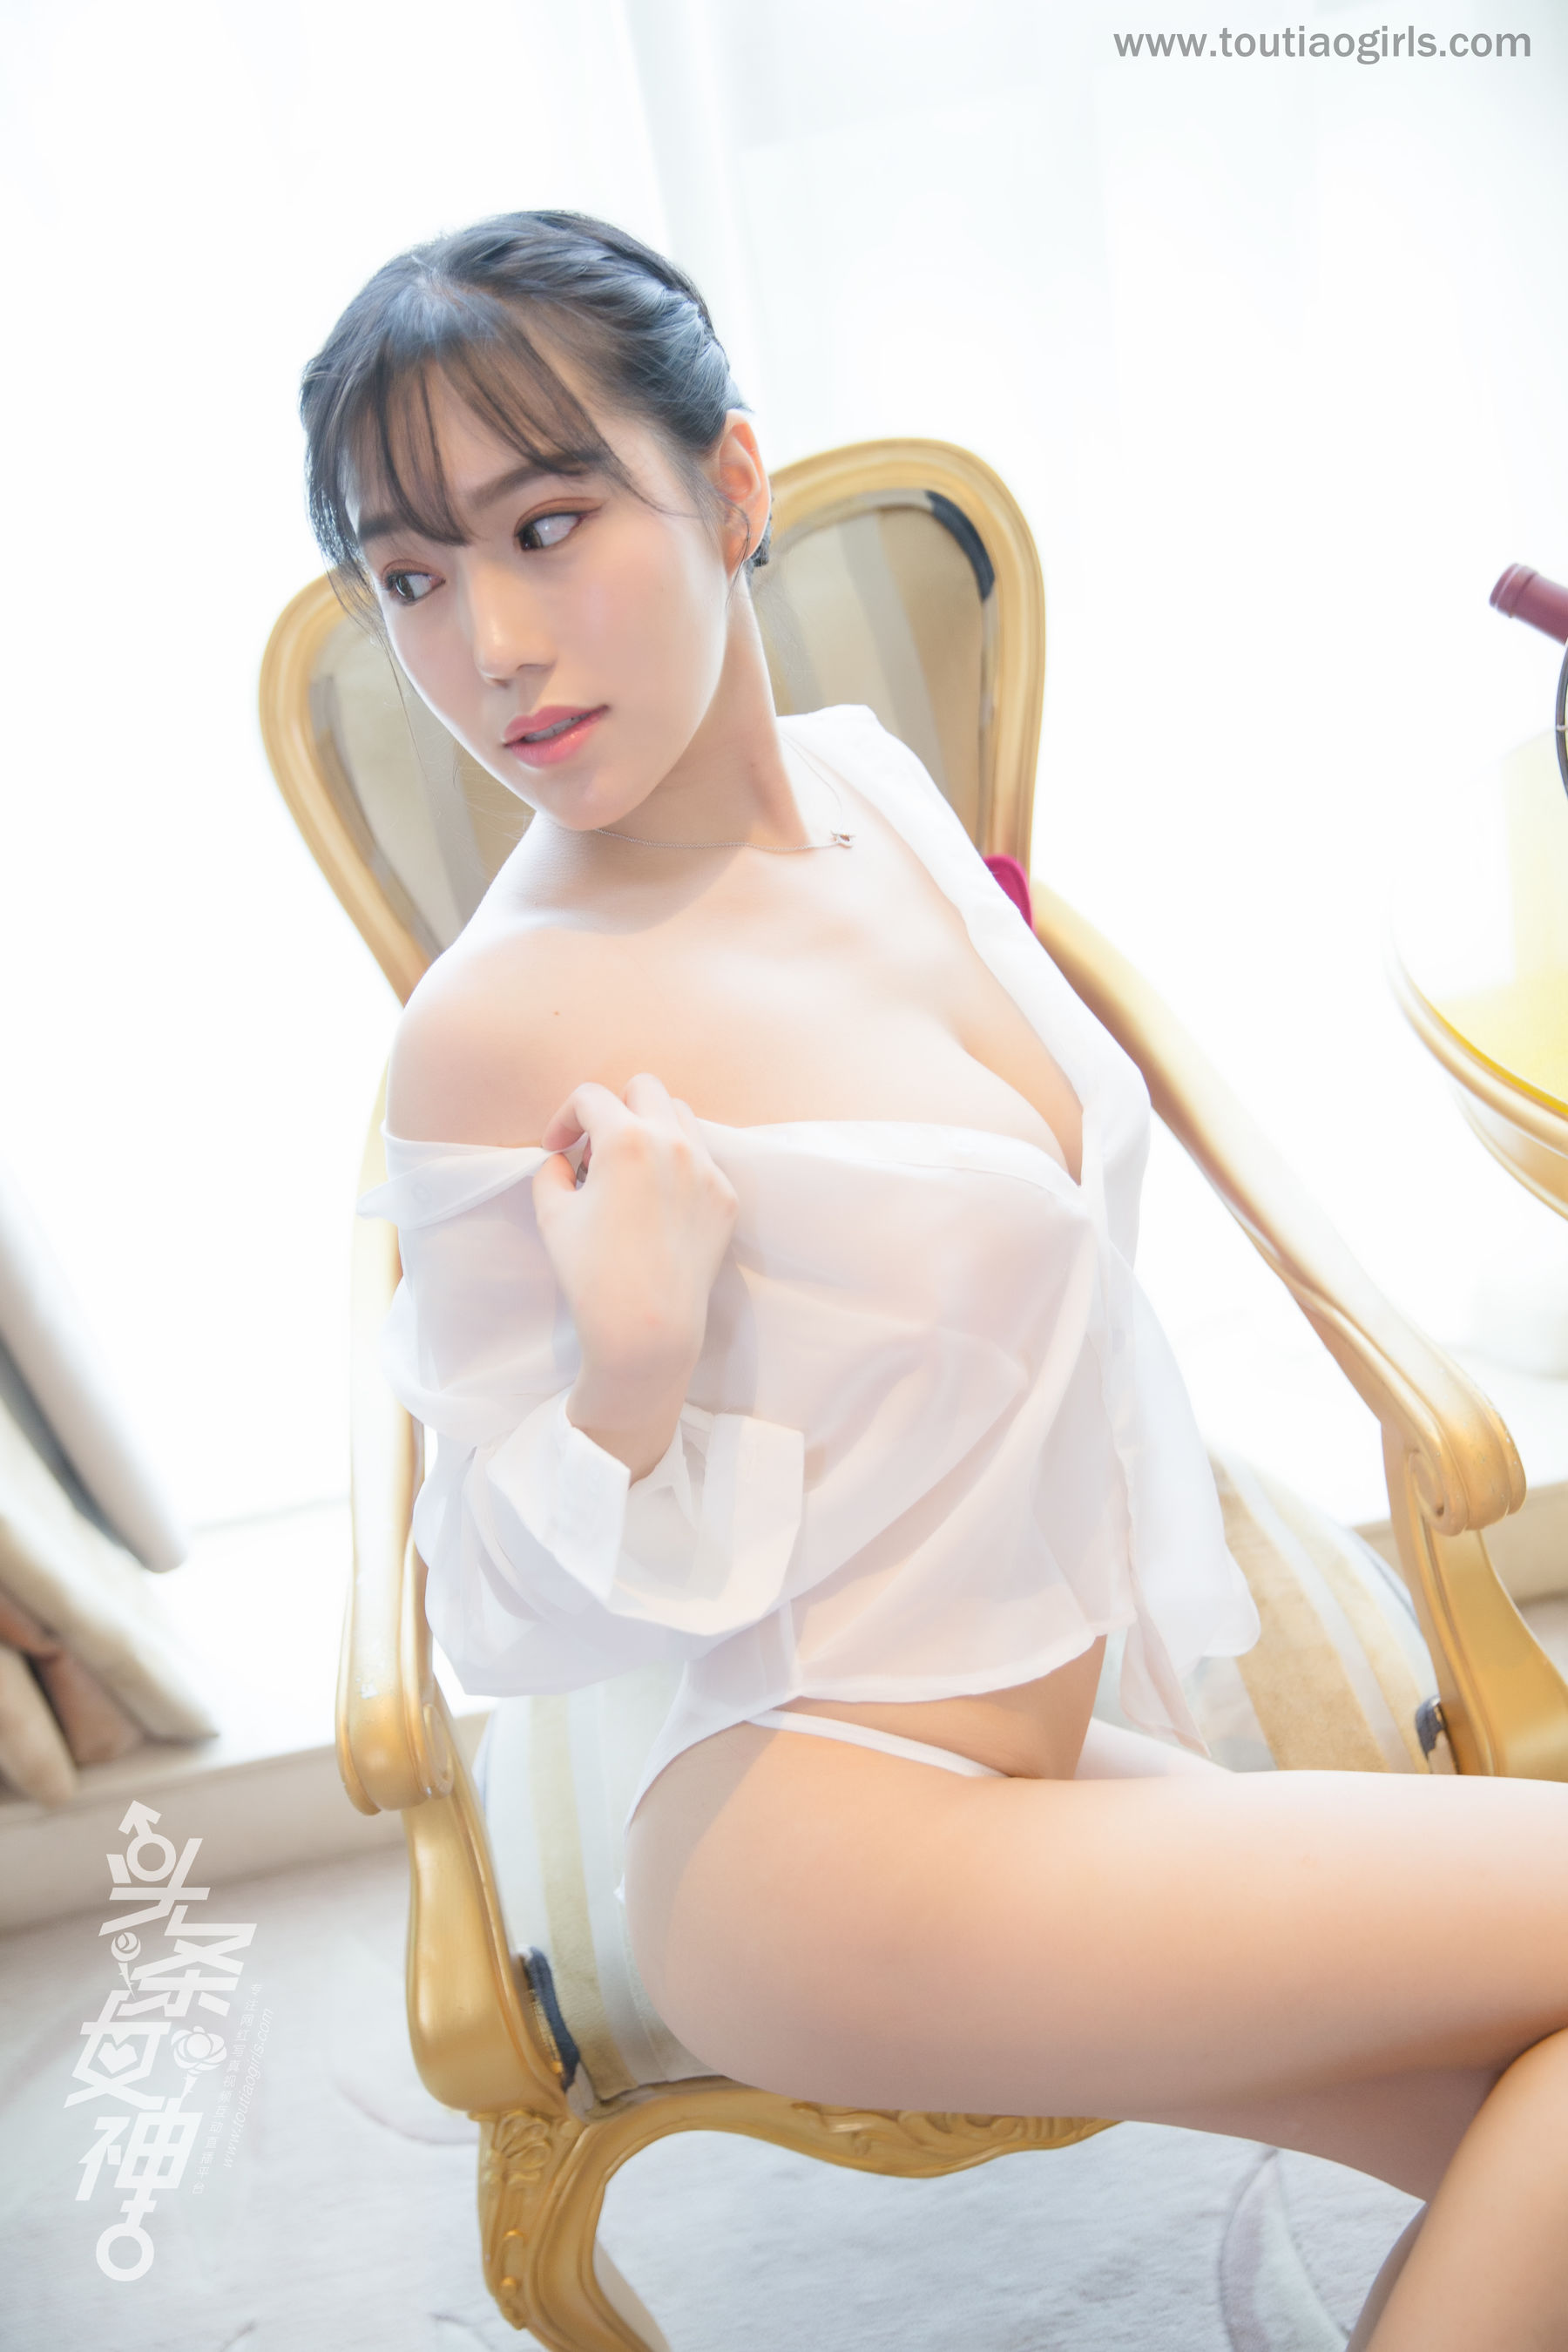 Chen Yifei's Qing Ben Beauty full version Toutiaogirls